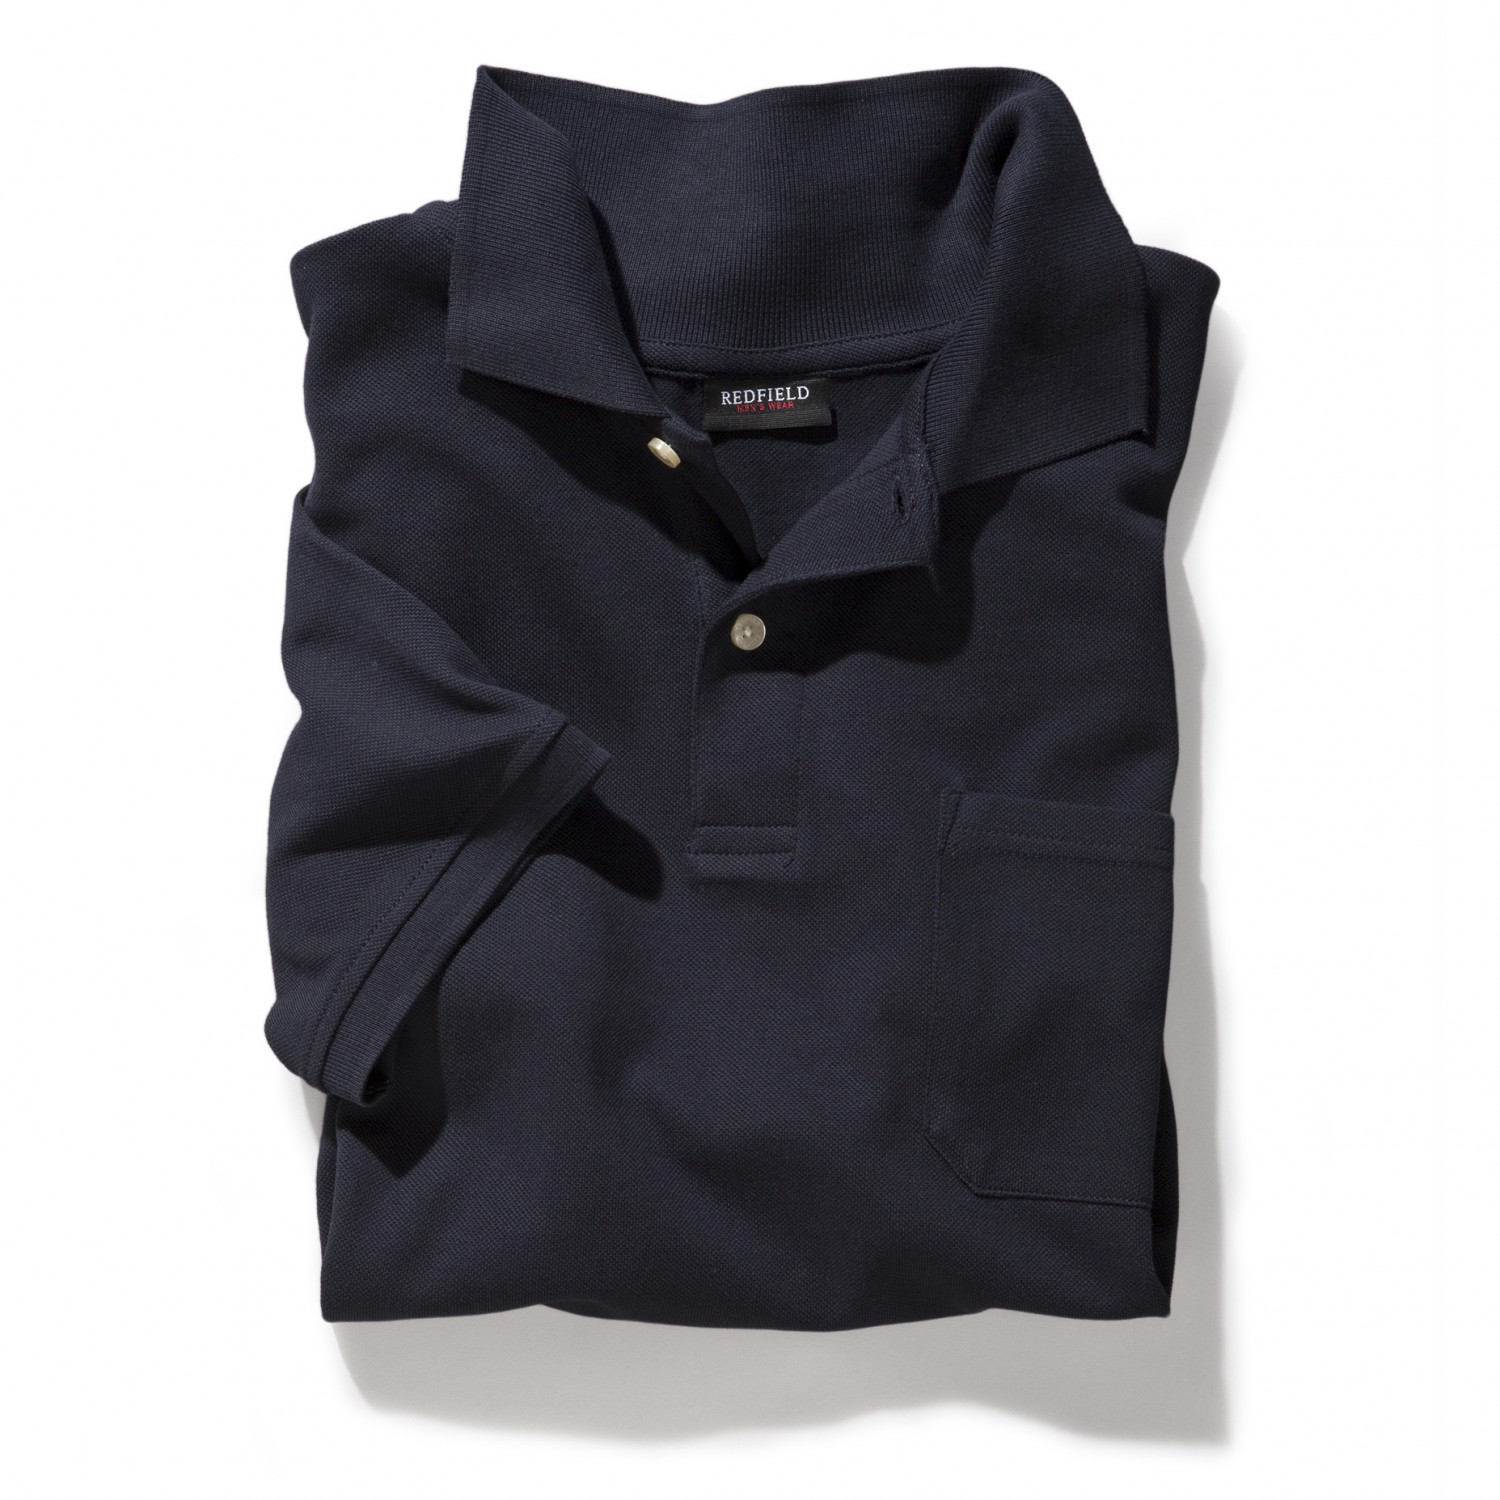 Dunkelblaues Herren Polo Shirt von Redfield in großen Größen bis 10XL